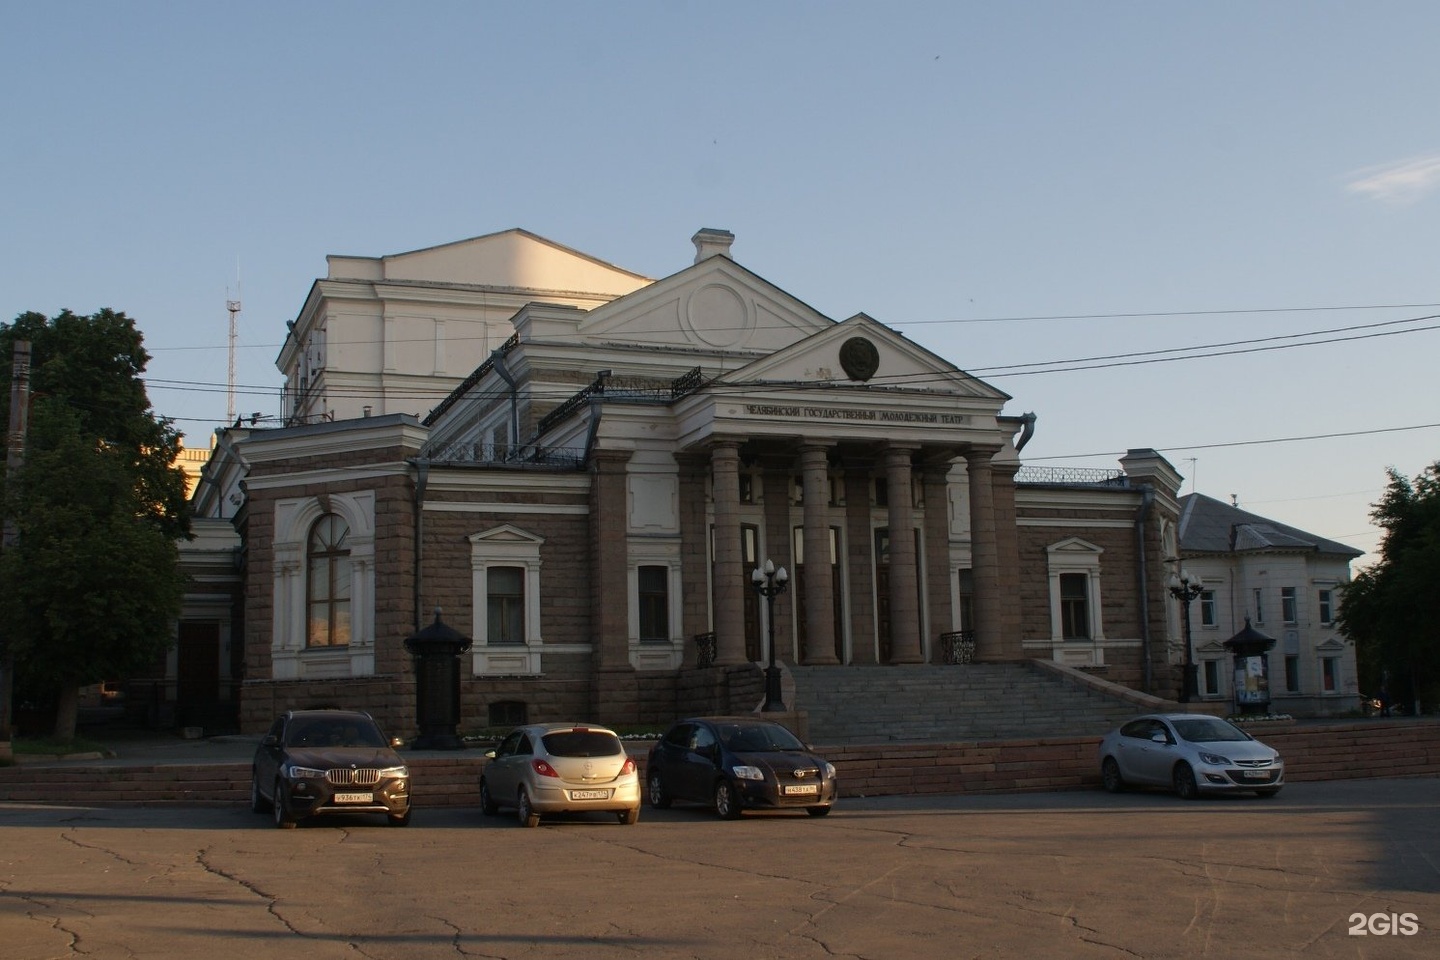 кирова 116 челябинск молодежный театр